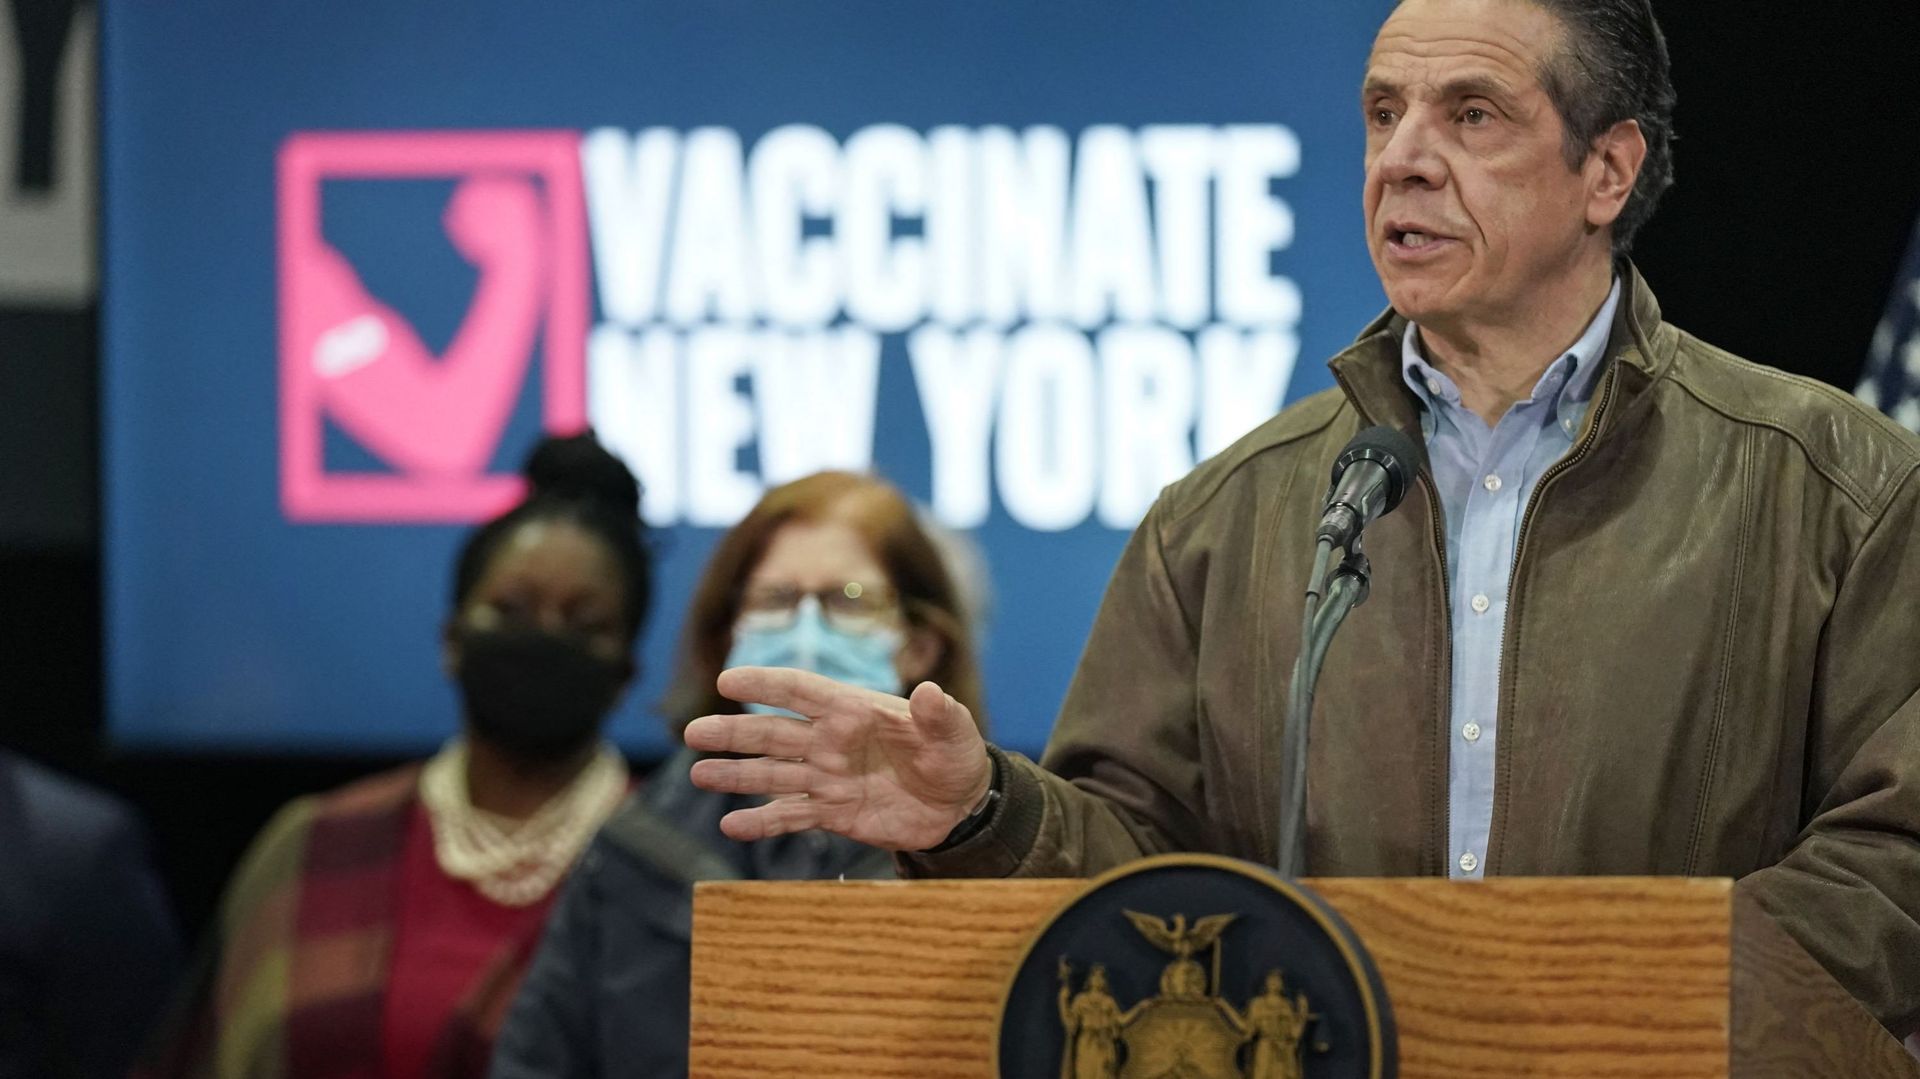 Accusé de harcèlement sexuel, le gouverneur de New York dit qu’il ne "démissionnera pas"